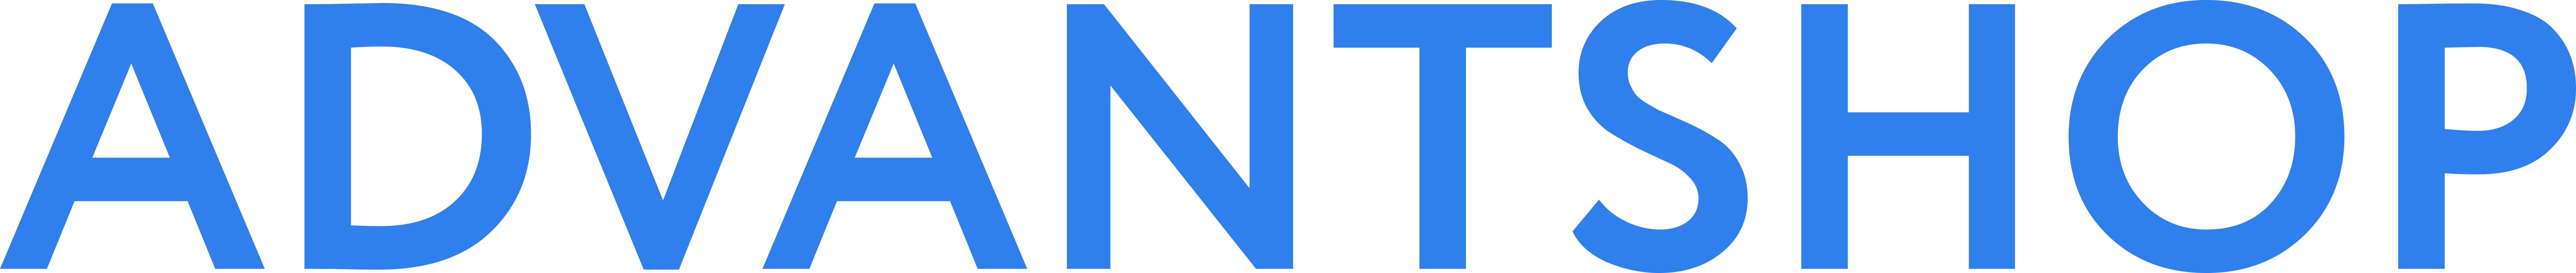 Логотип AdvantShop для прессы синие буквы, png